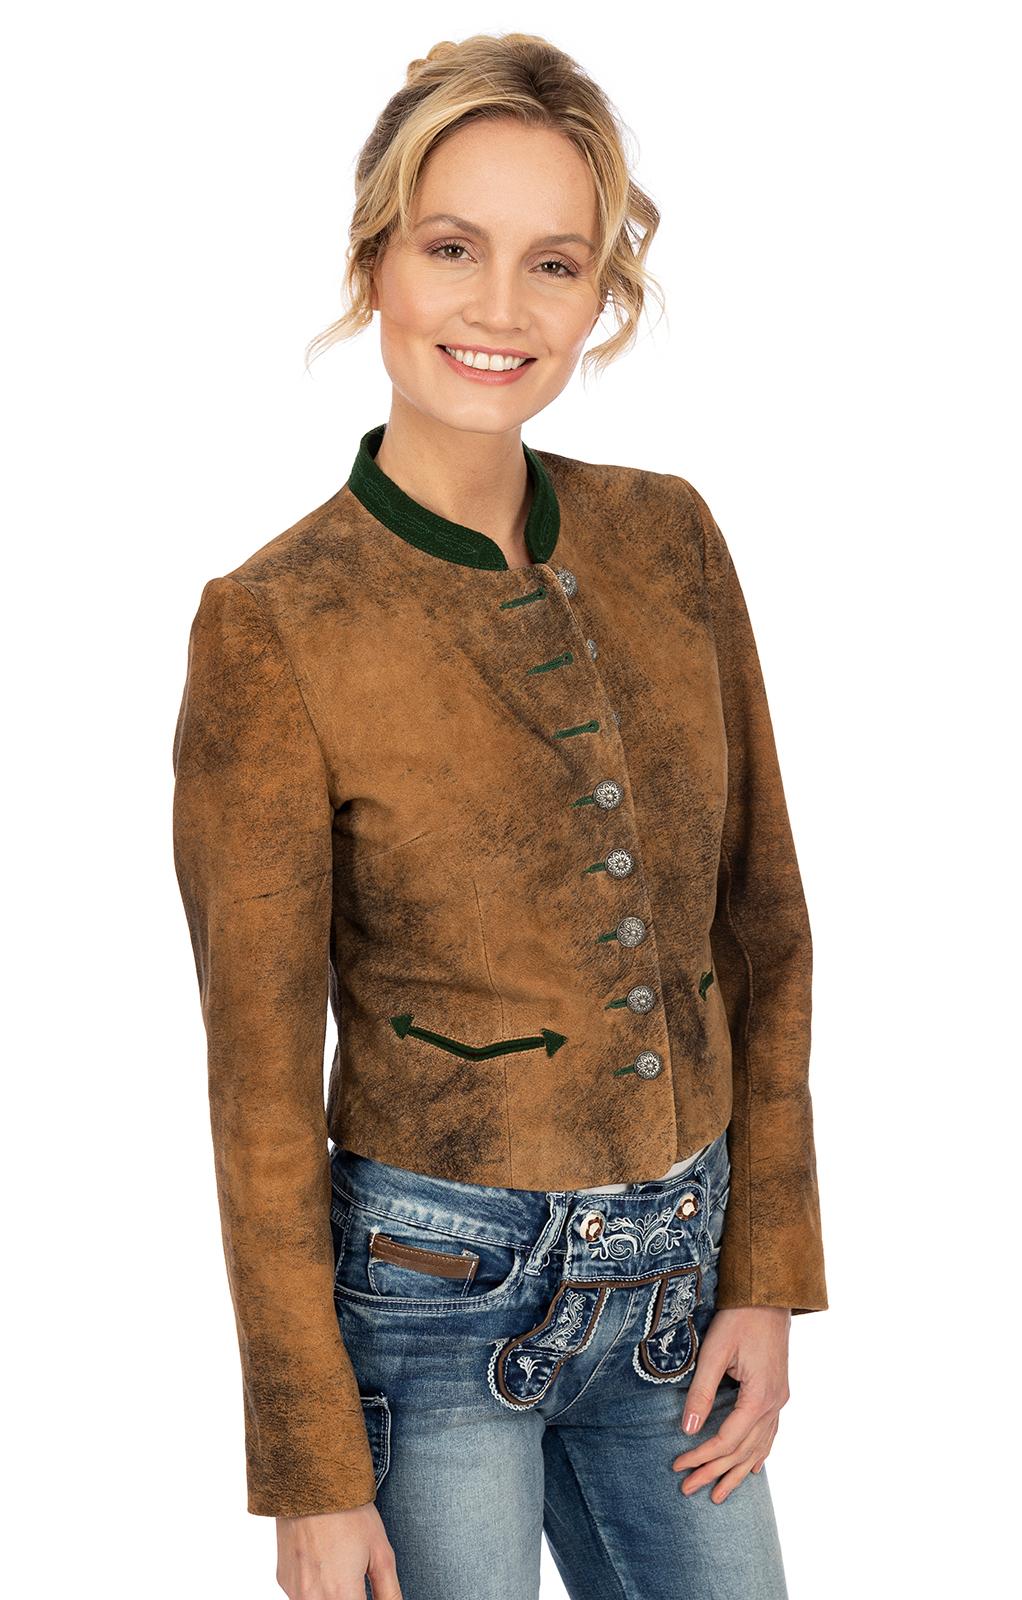 weitere Bilder von Traditional Leather jacket GALIGOA brown